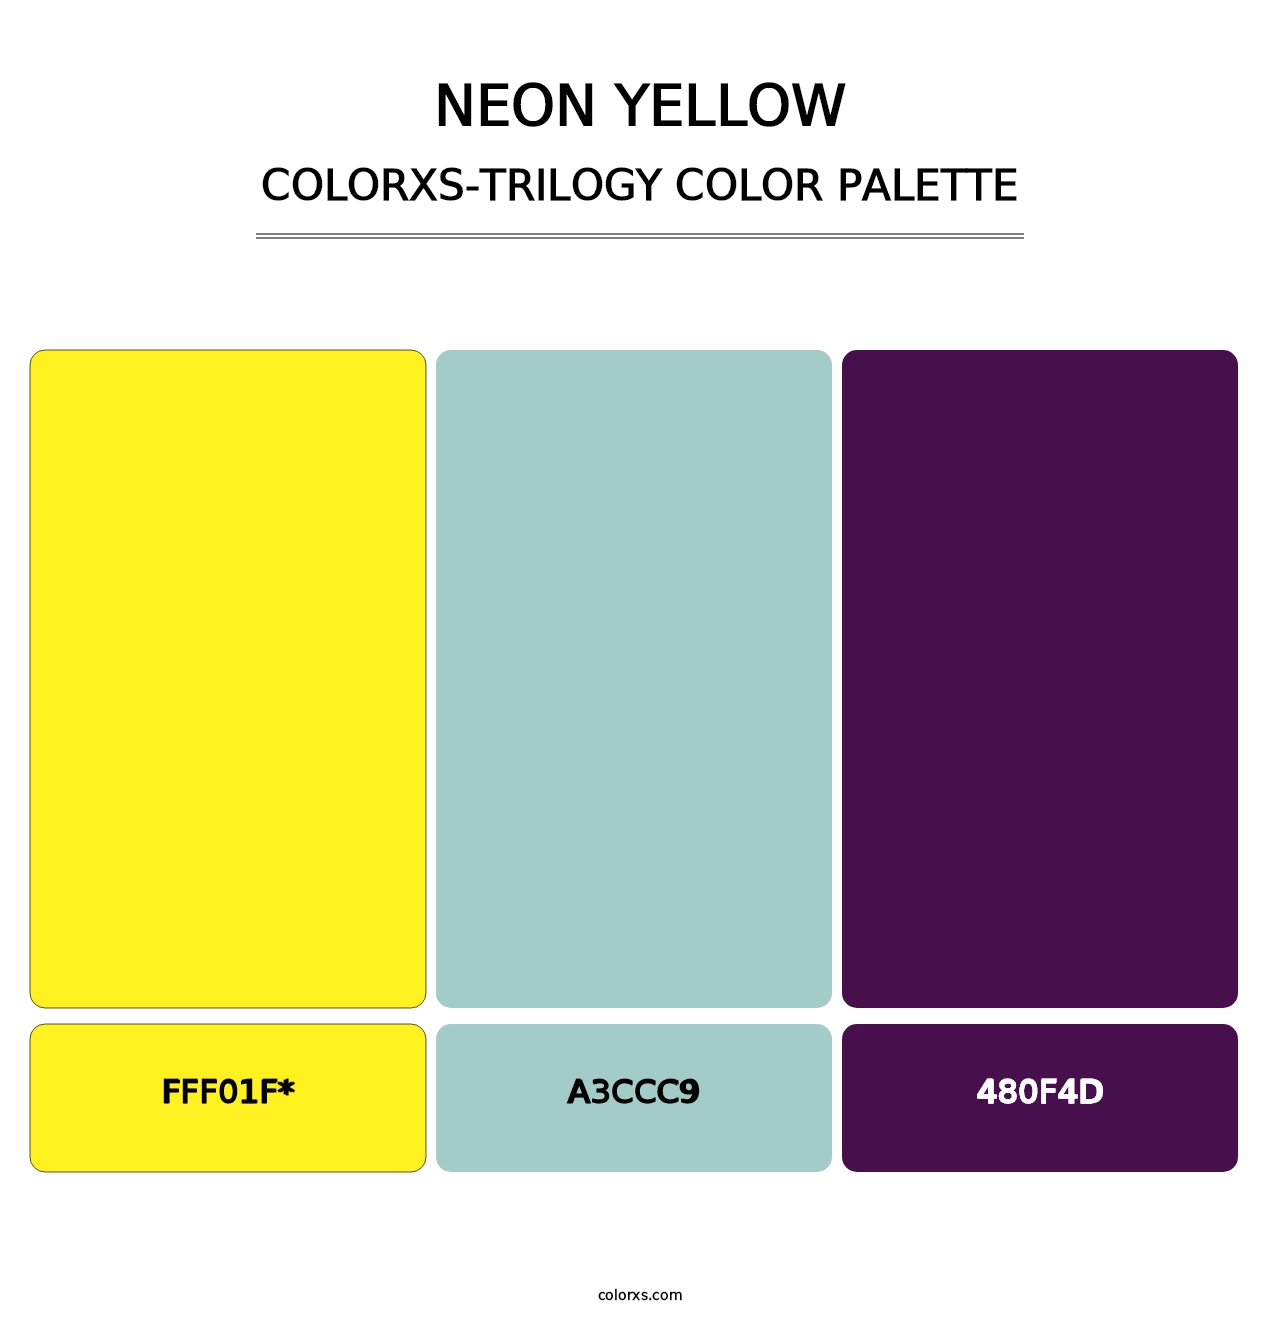 Neon Yellow - Colorxs Trilogy Palette